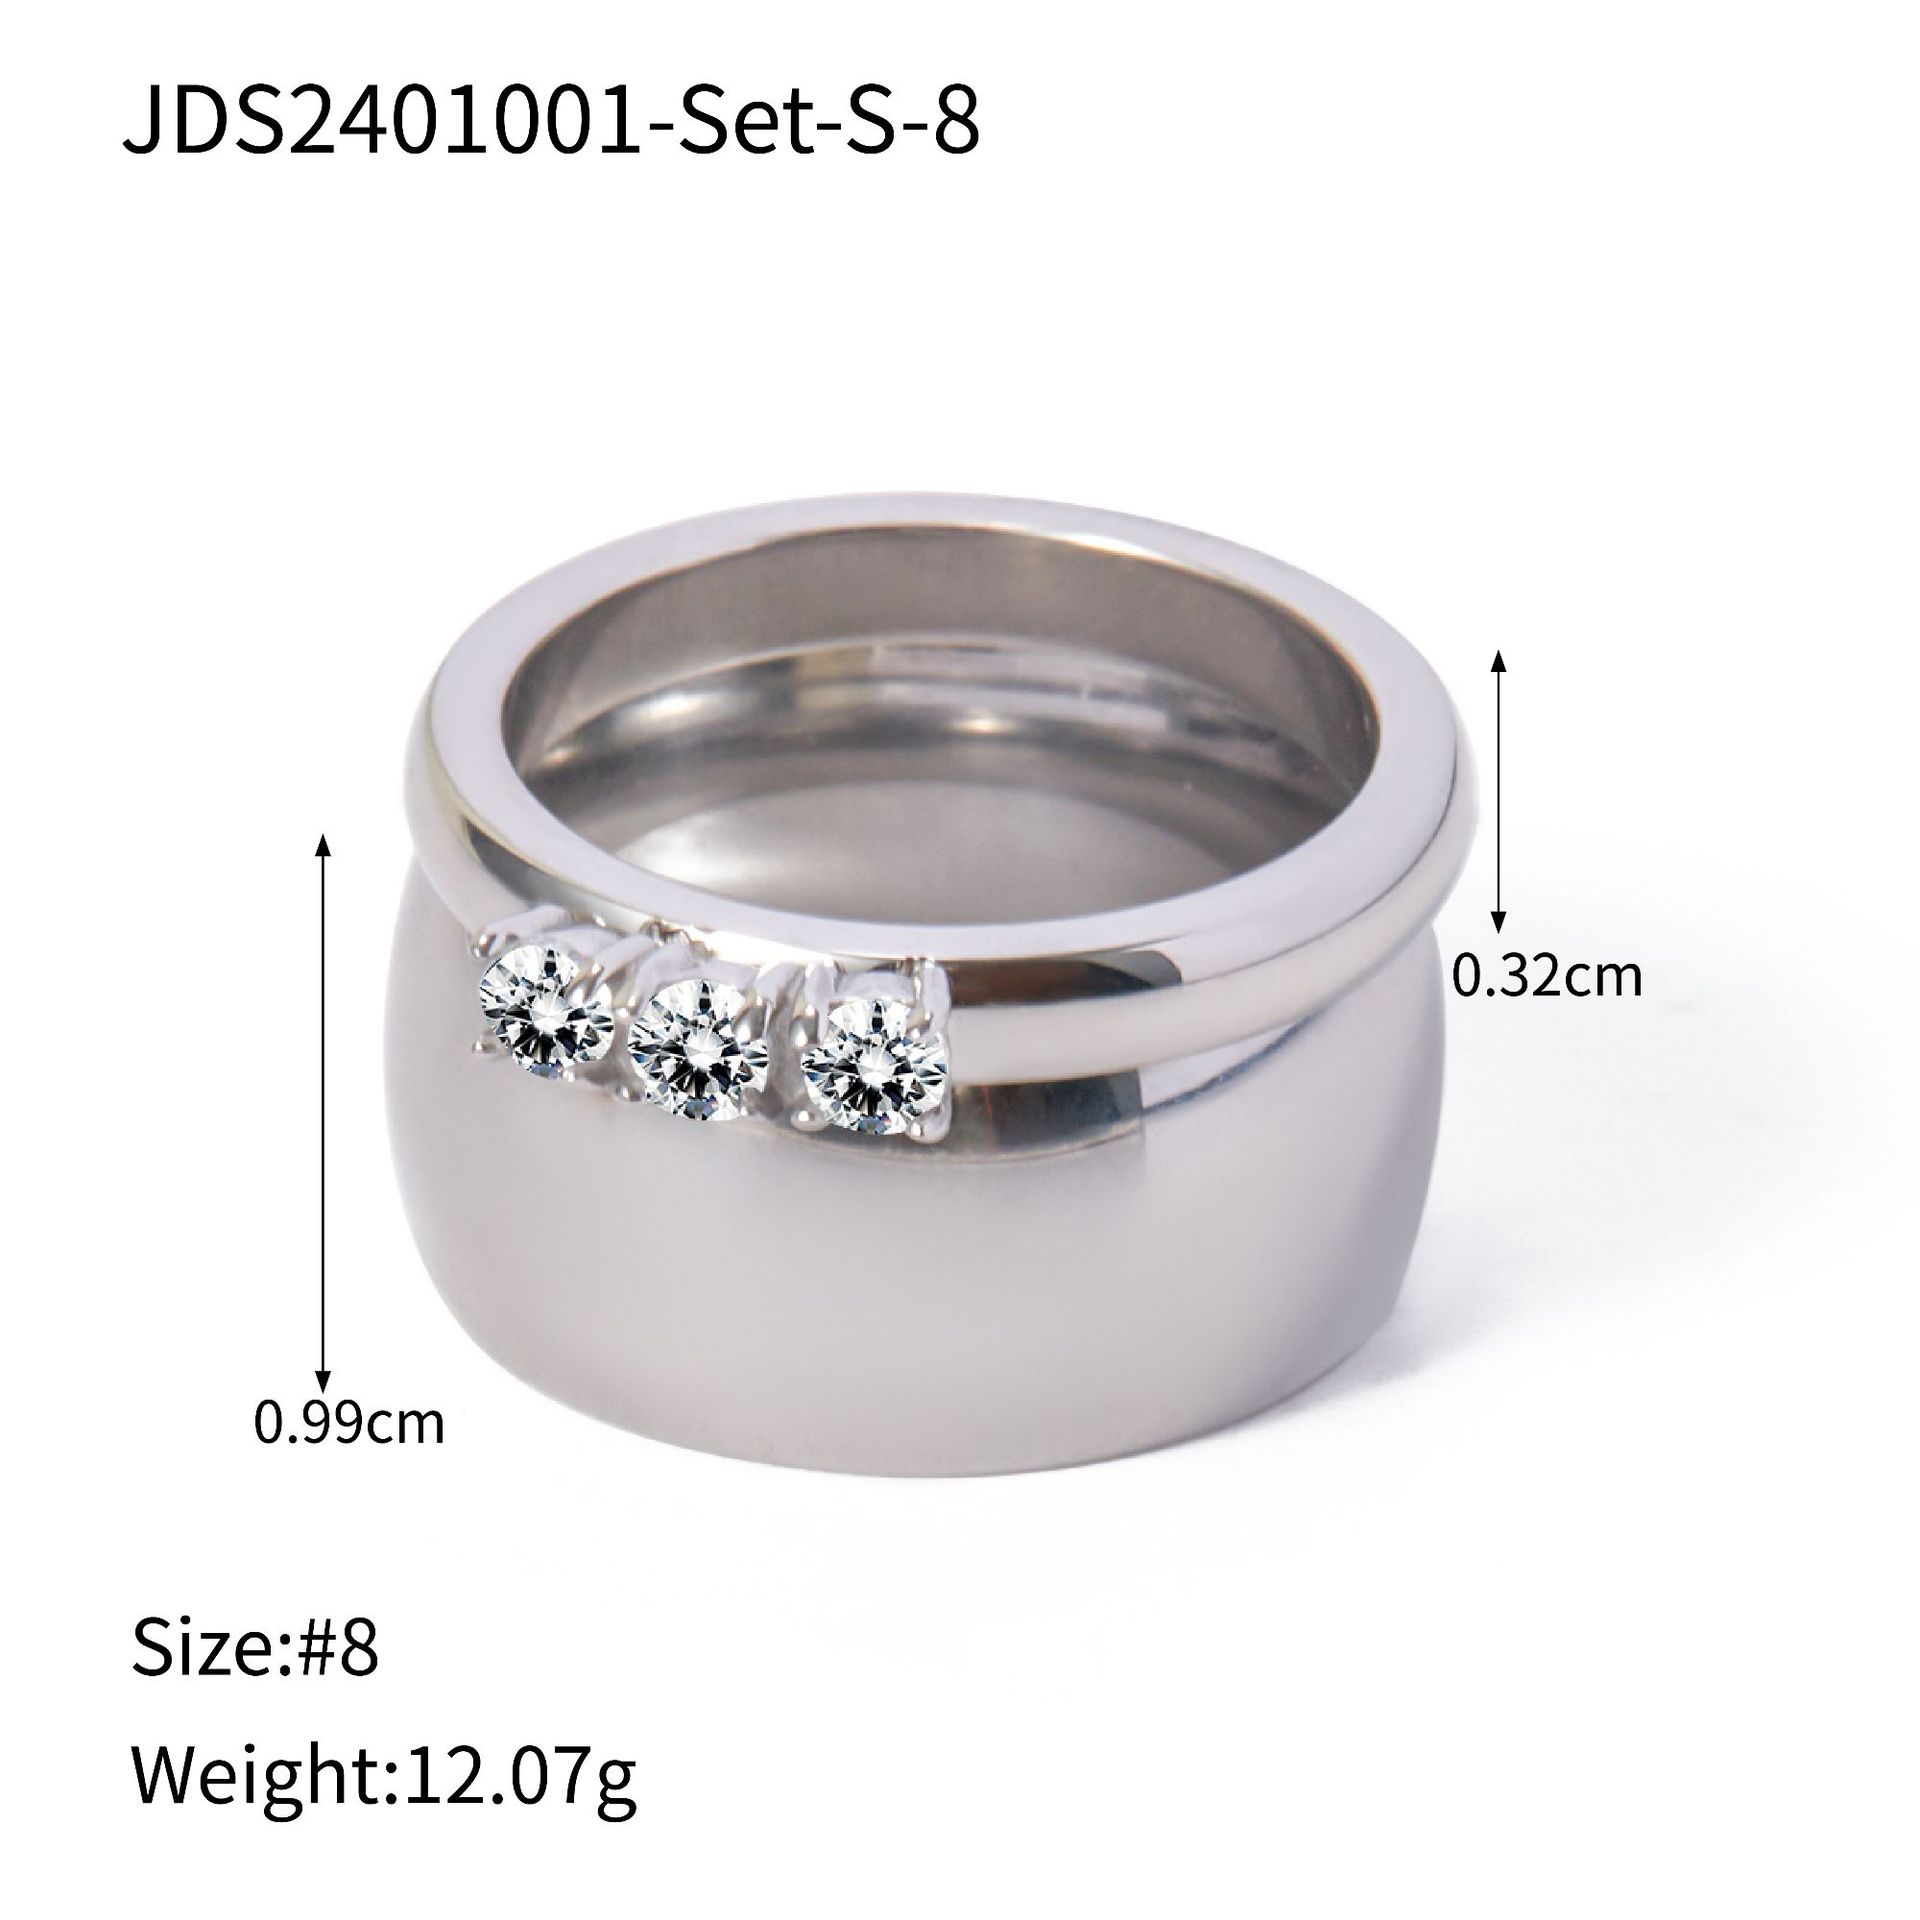 JDS2401001-Set-S-8